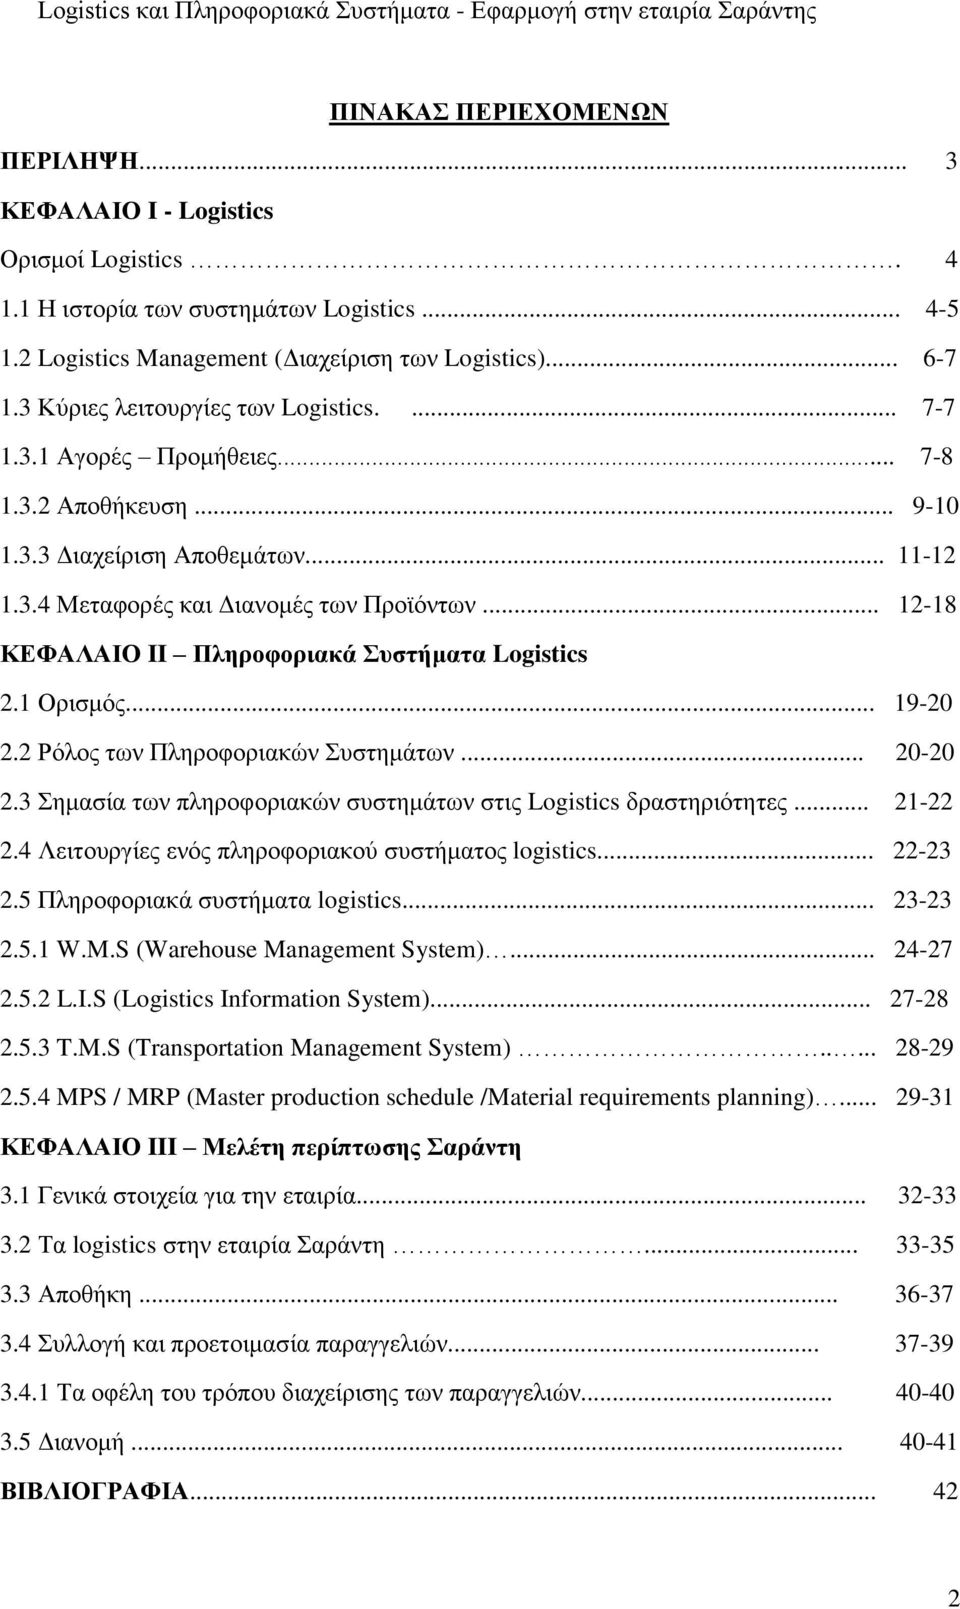 .. 12-18 ΚΕΦΑΛΑΙΟ II Πληροφοριακά Συστήματα Logistics 2.1 Ορισμός... 19-20 2.2 Ρόλος των Πληροφοριακών Συστημάτων... 20-20 2.3 Σημασία των πληροφοριακών συστημάτων στις Logistics δραστηριότητες.